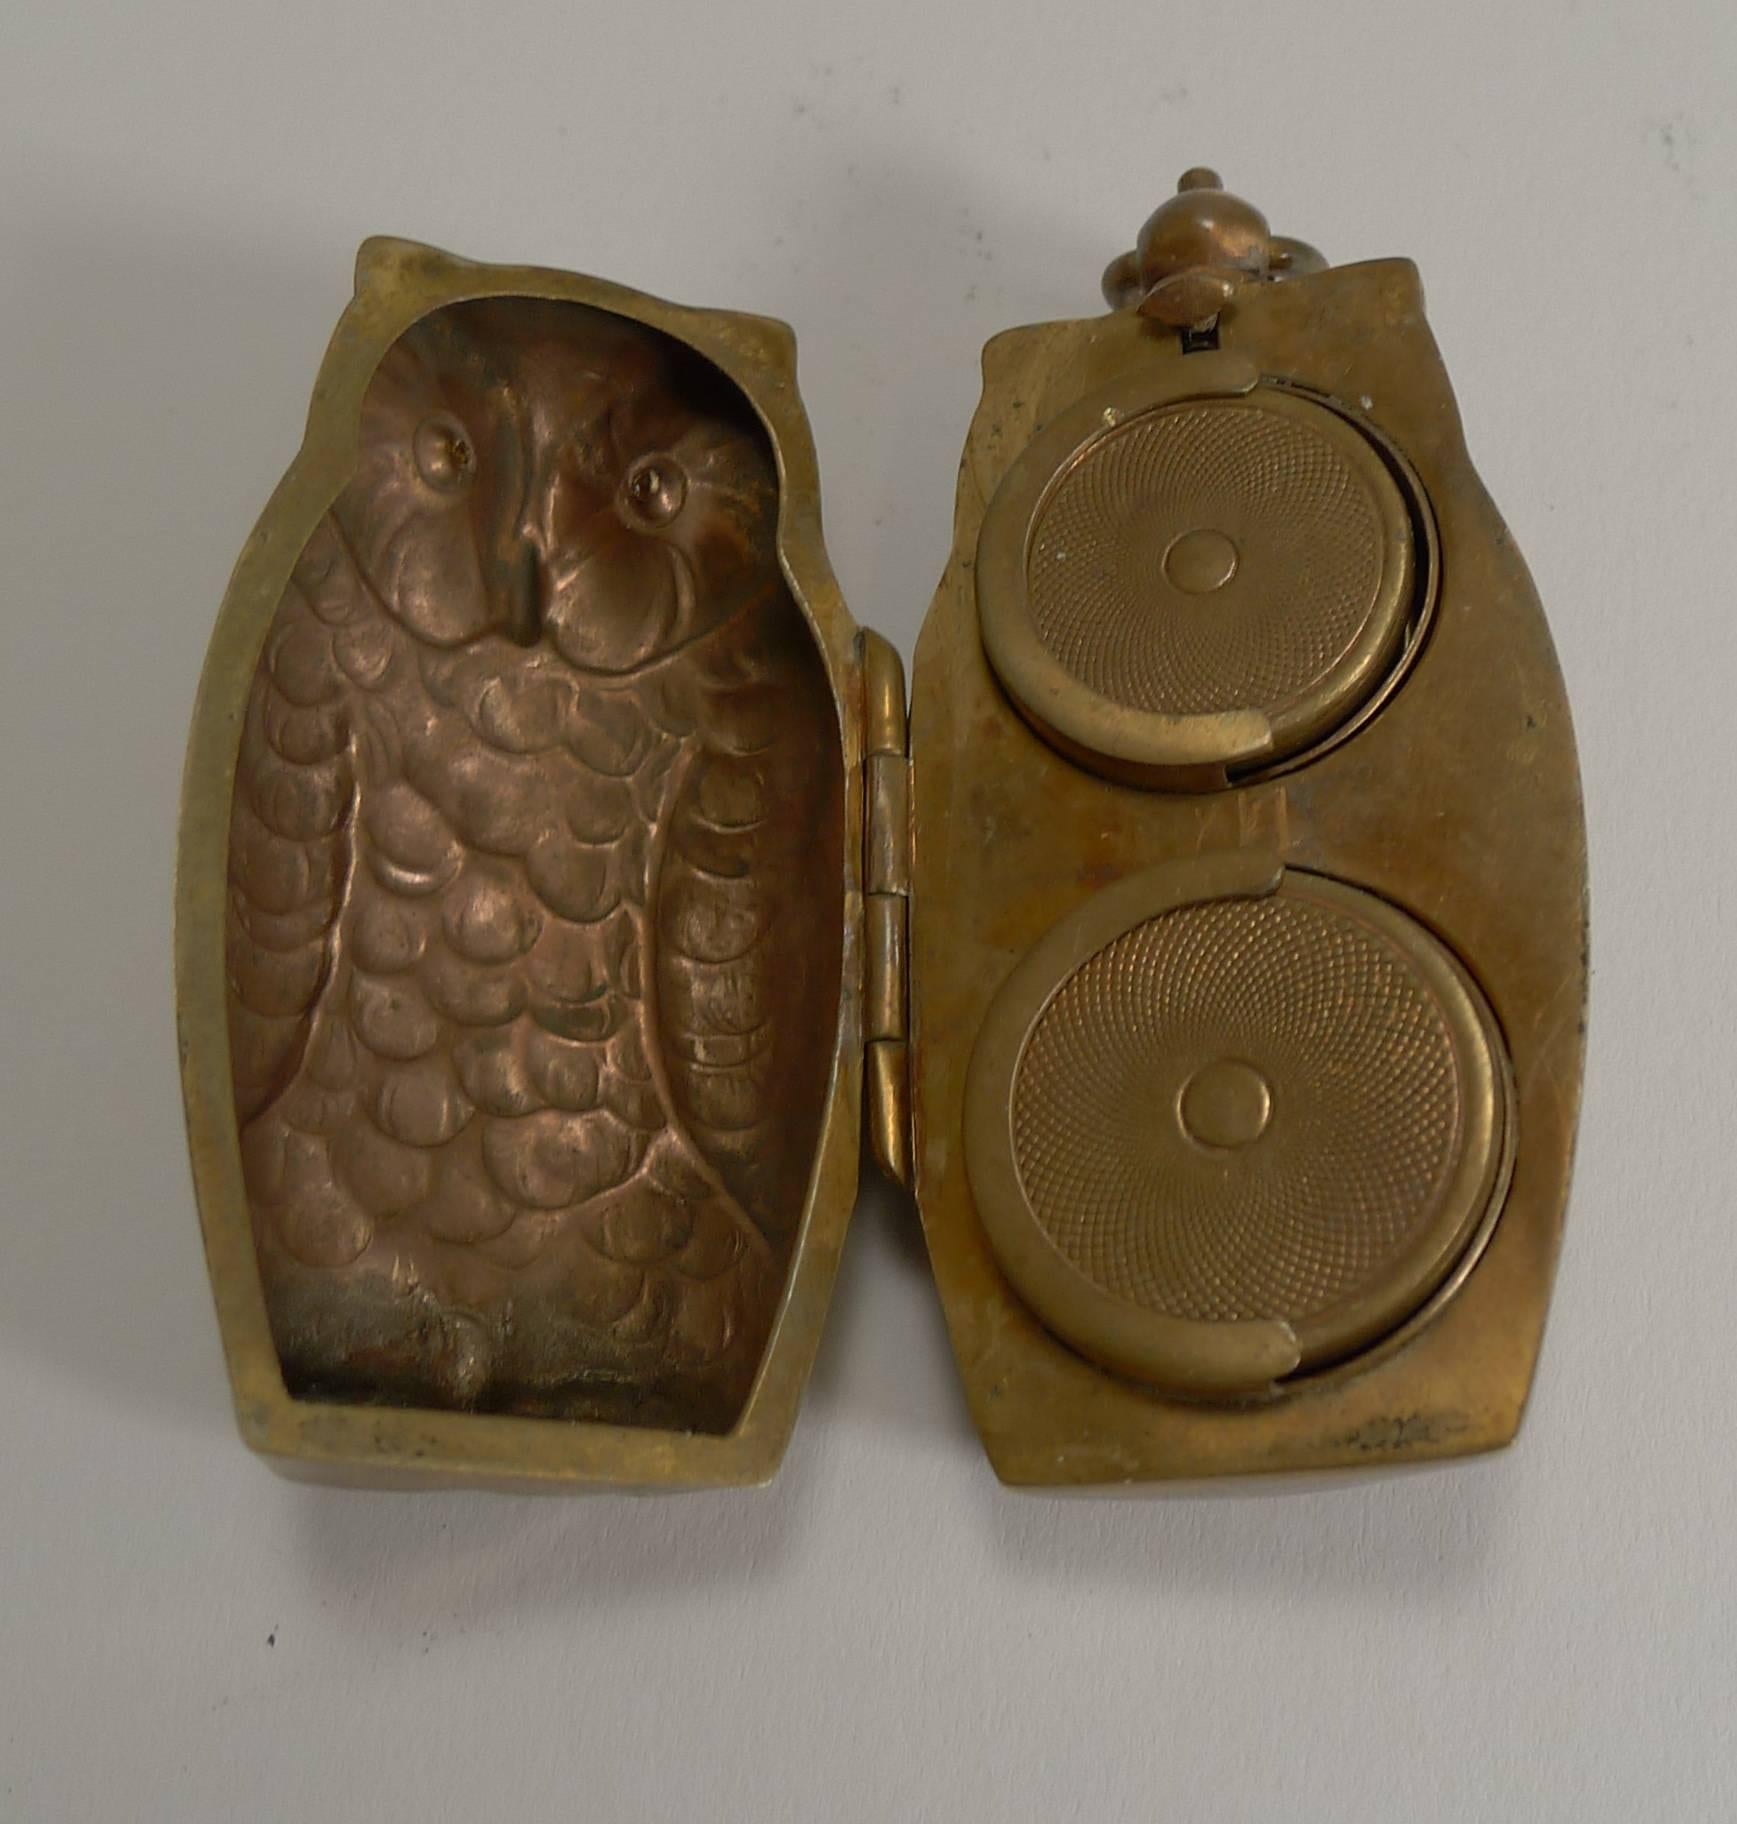 owl cases